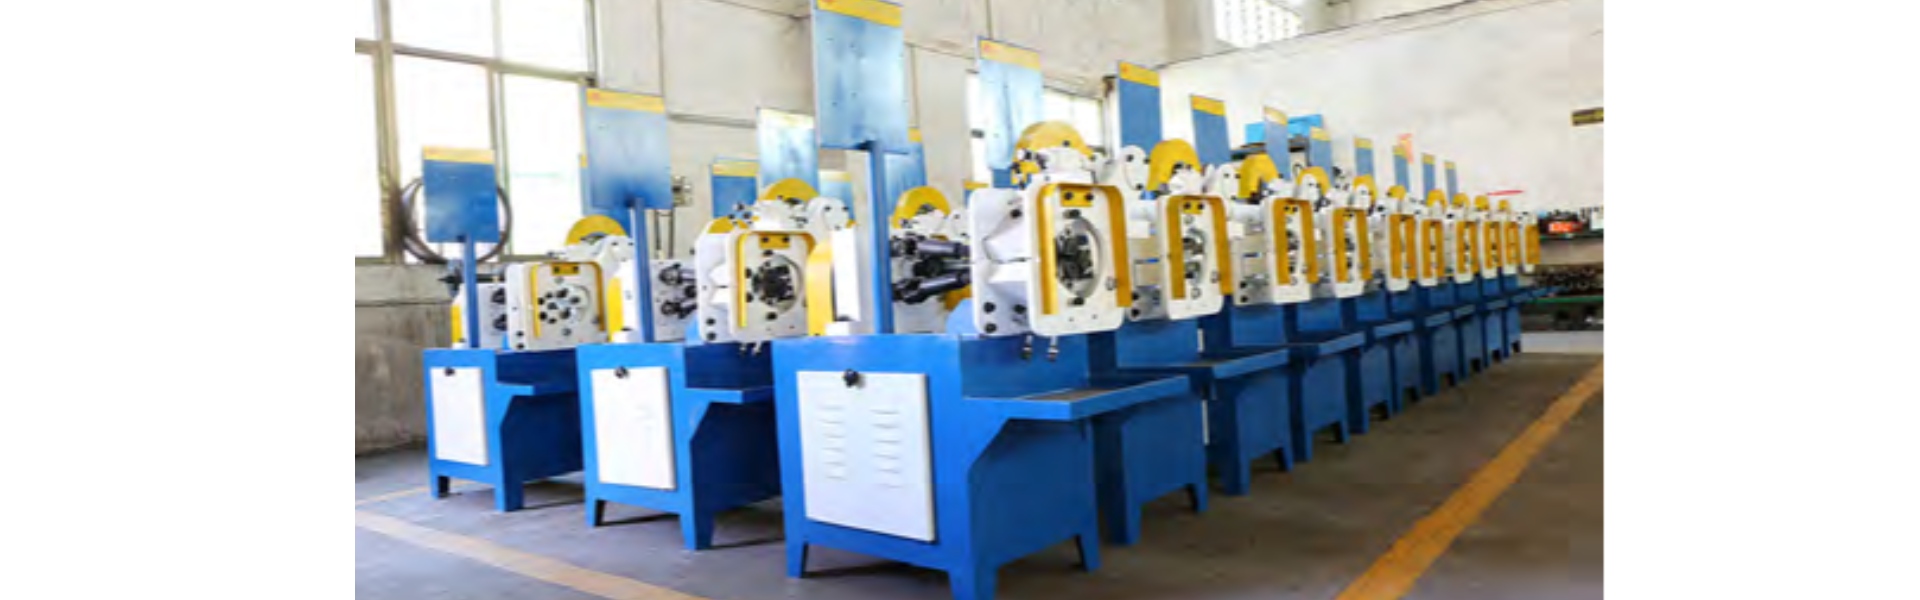 เครื่องตัดท่ออัตโนมัติเครื่องตัดฟันอัตโนมัติ,Dongguan Hongbo Precision Machinery Manufacturing Co.,Ltd.